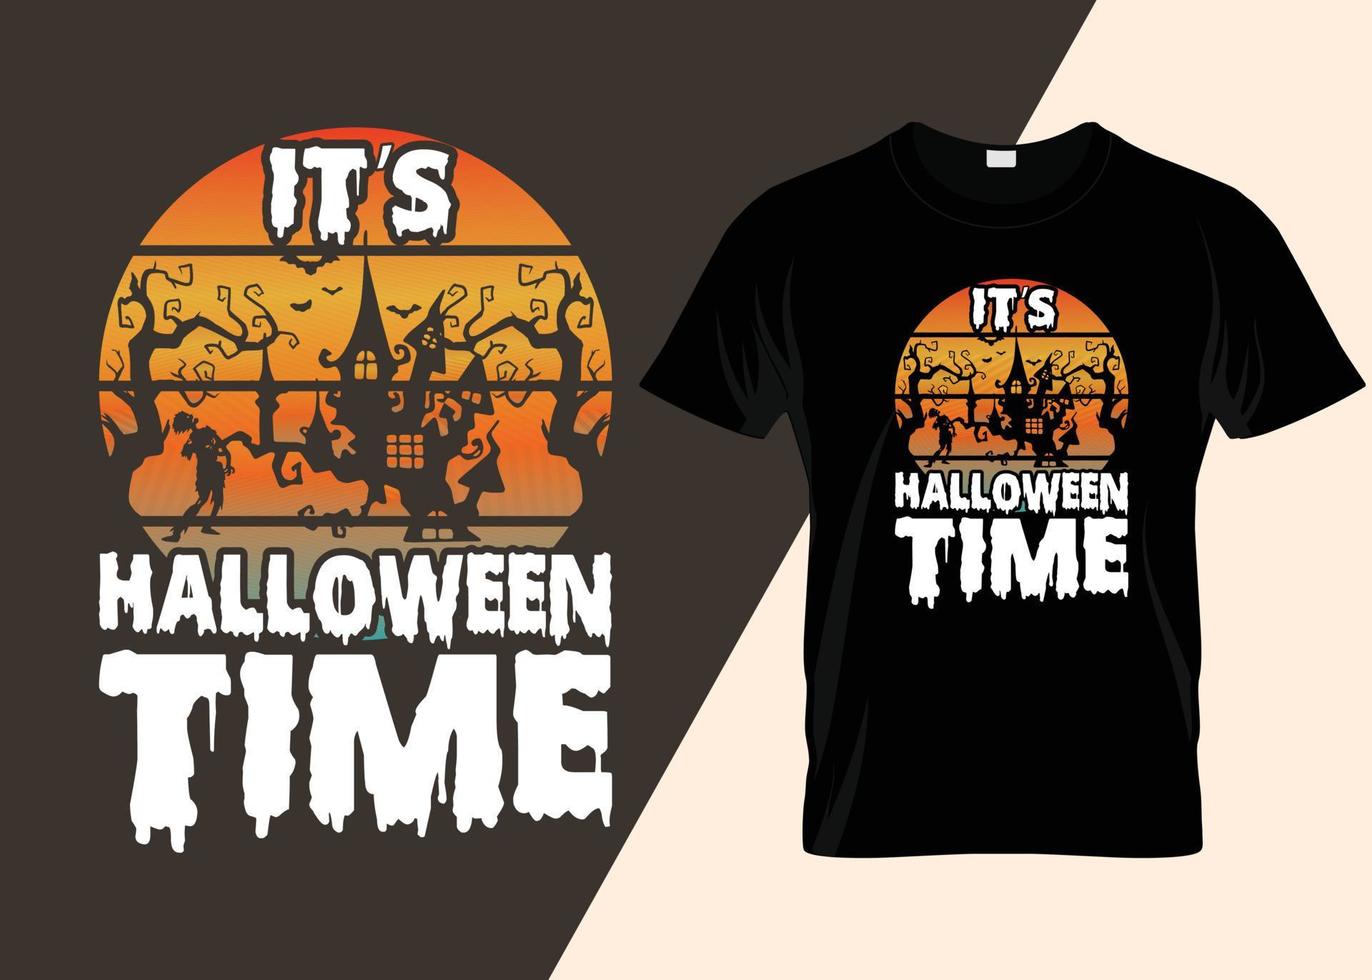 c'est la conception de t-shirt de typographie de l'heure d'halloween vecteur